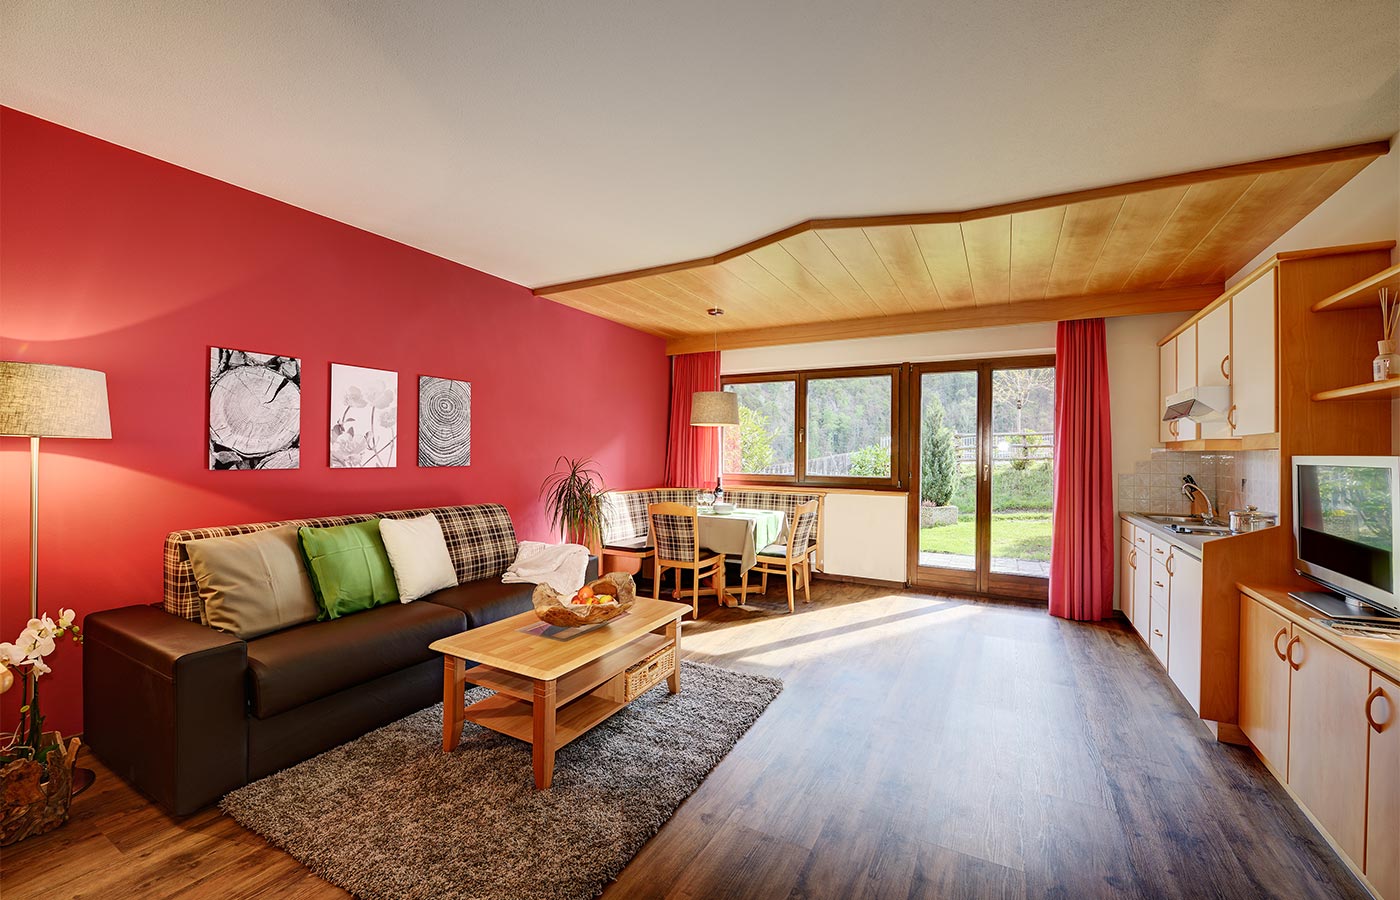 Ferienwohnung im Hotel Alpenhof mit rot gestrichener Wand und Holzboden